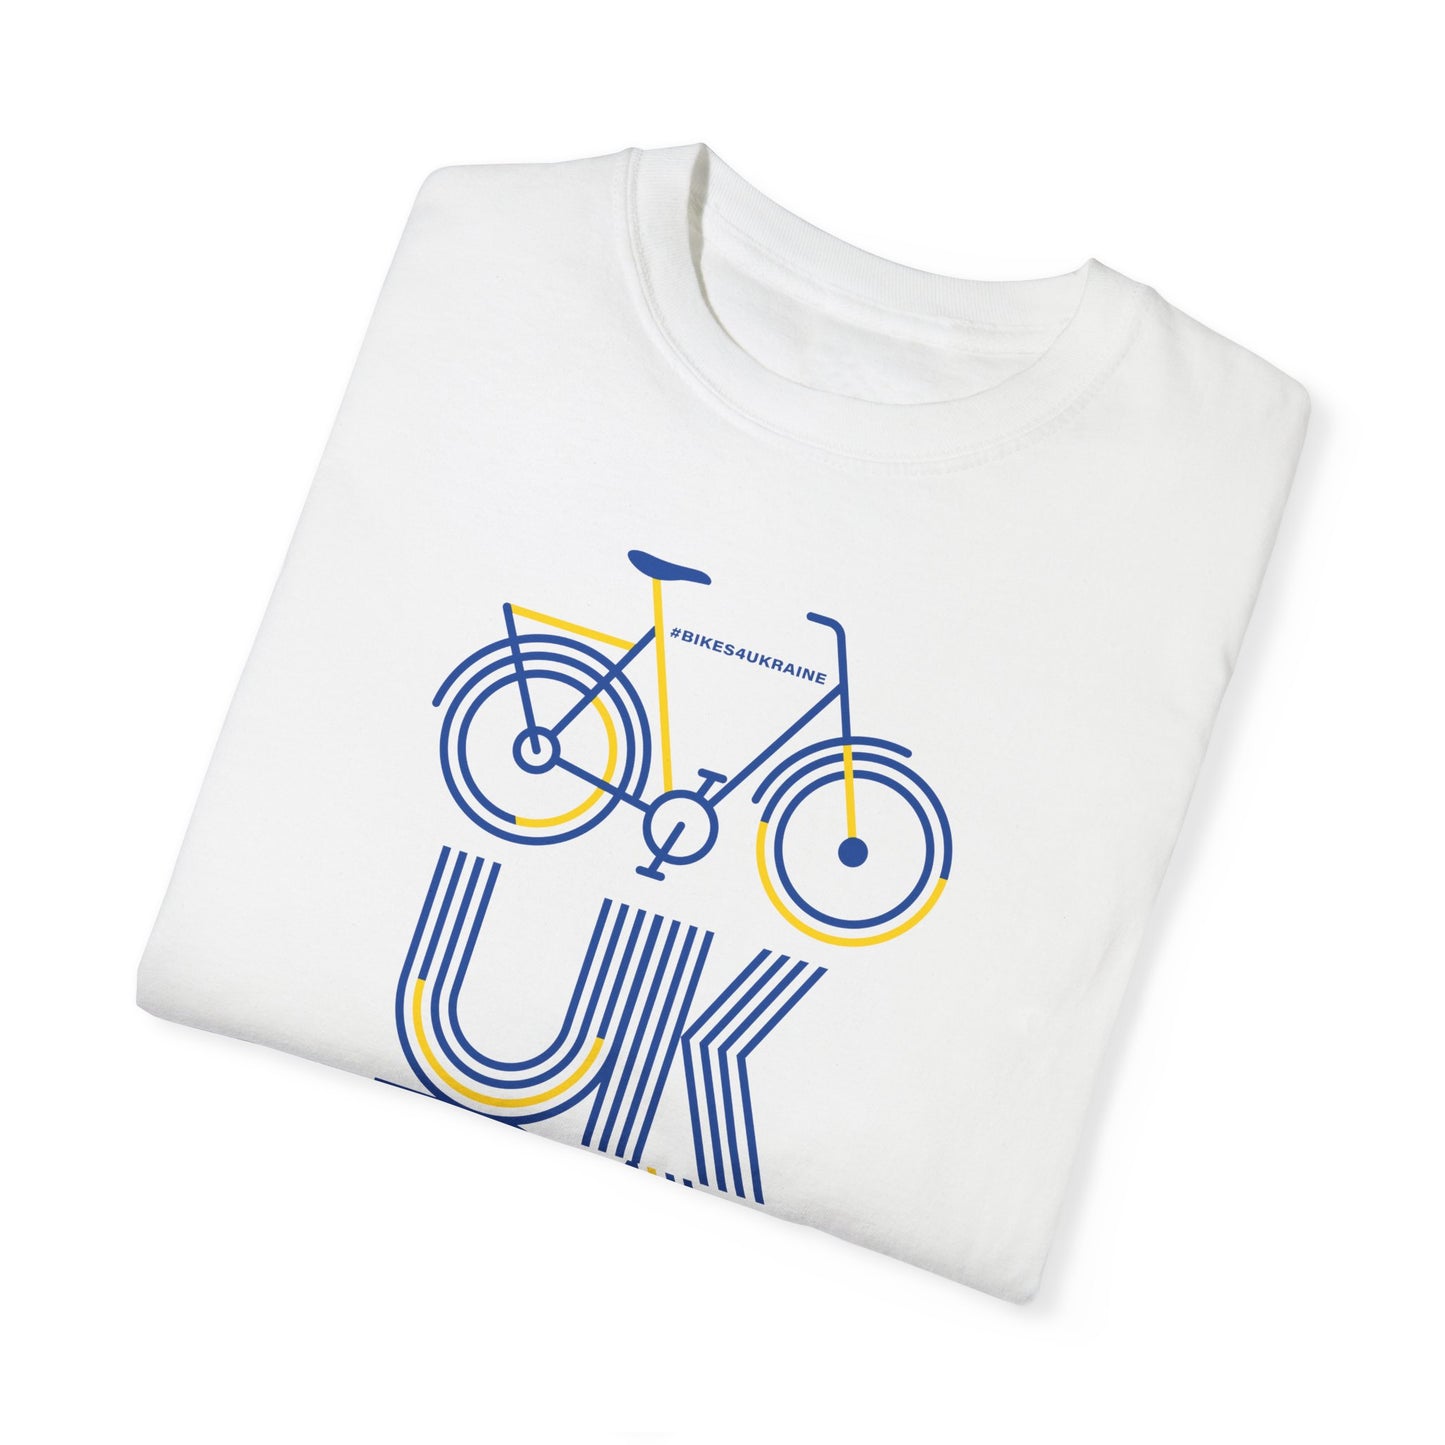 Bikes4Ukraine T-shirt - Design by Brian Branch